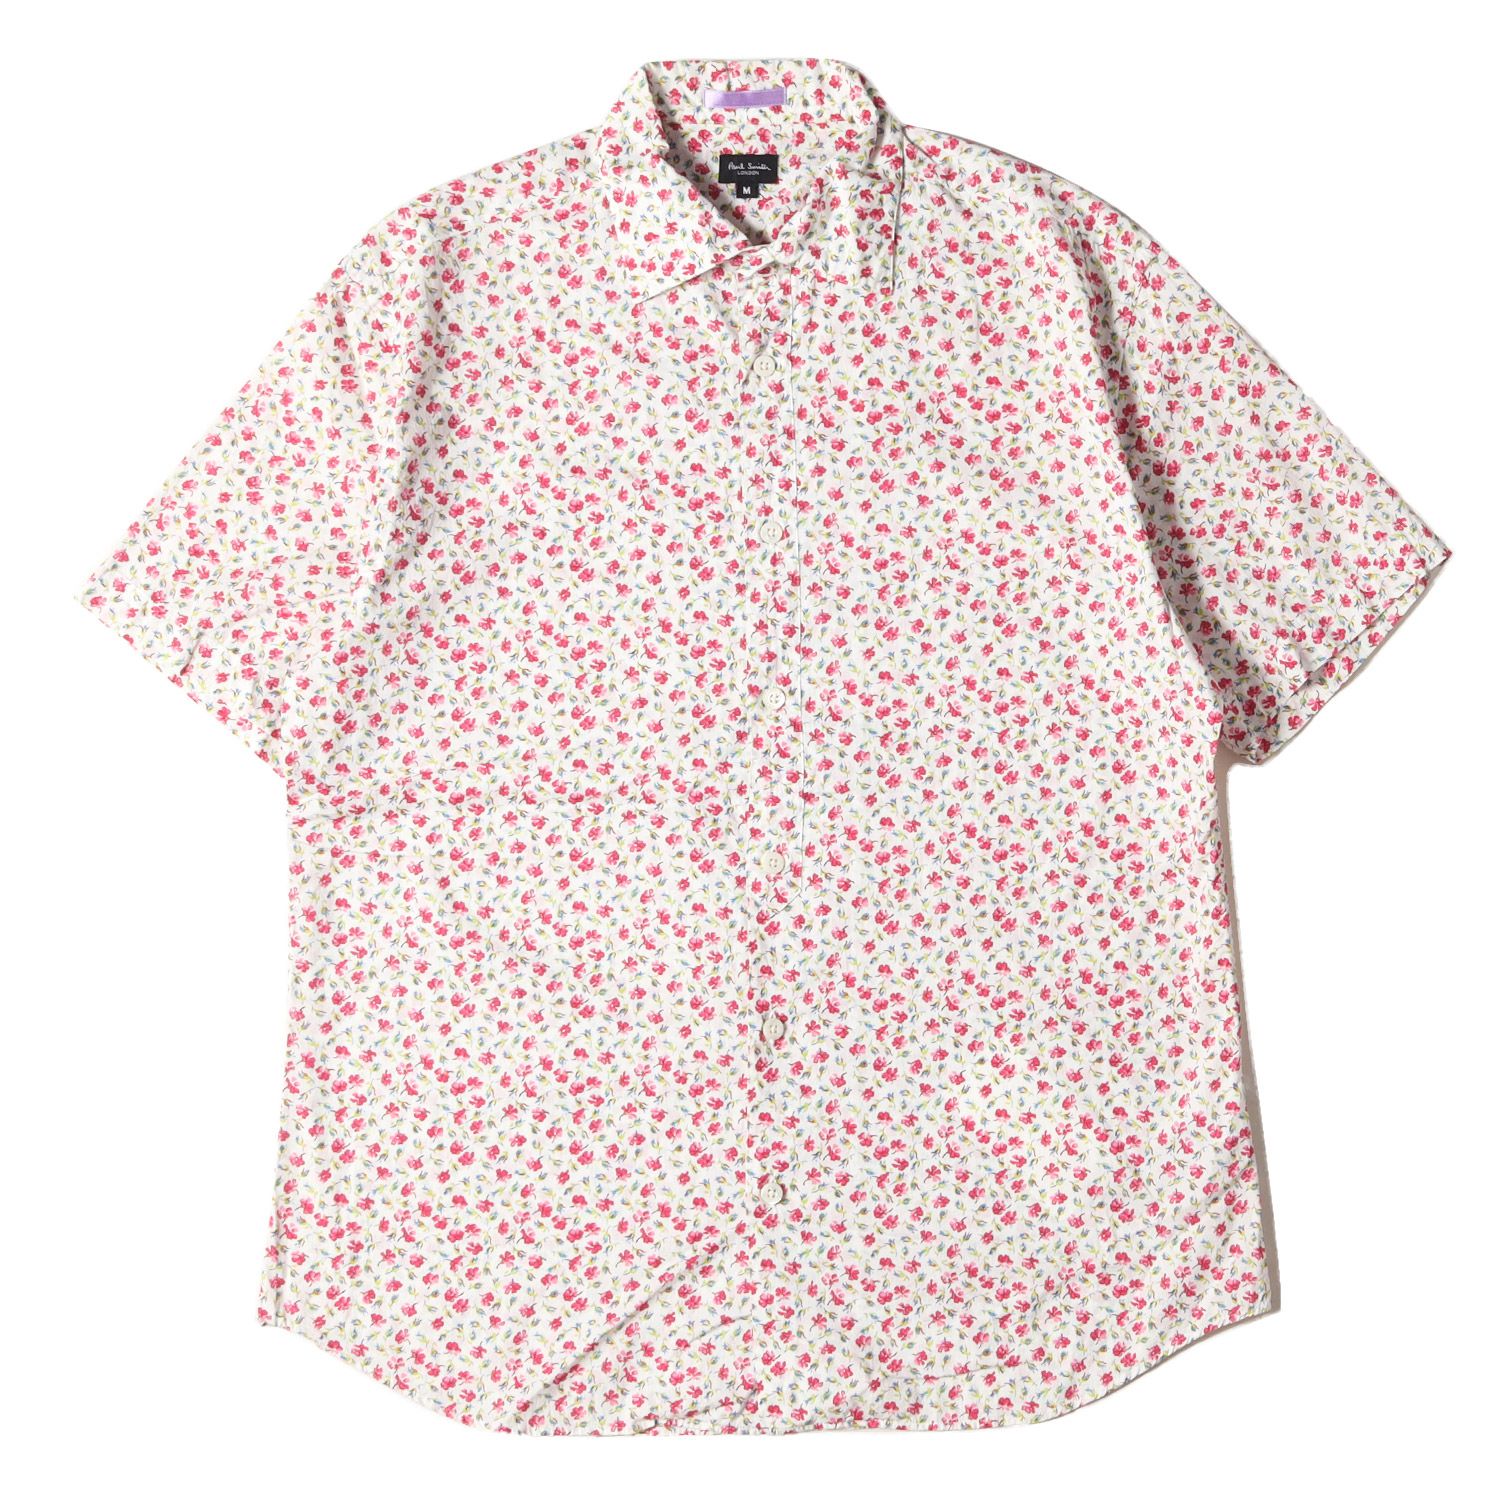 Paul Smith ポールスミス シャツ サイズ:M 小花柄 半袖 ドレス シャツ 